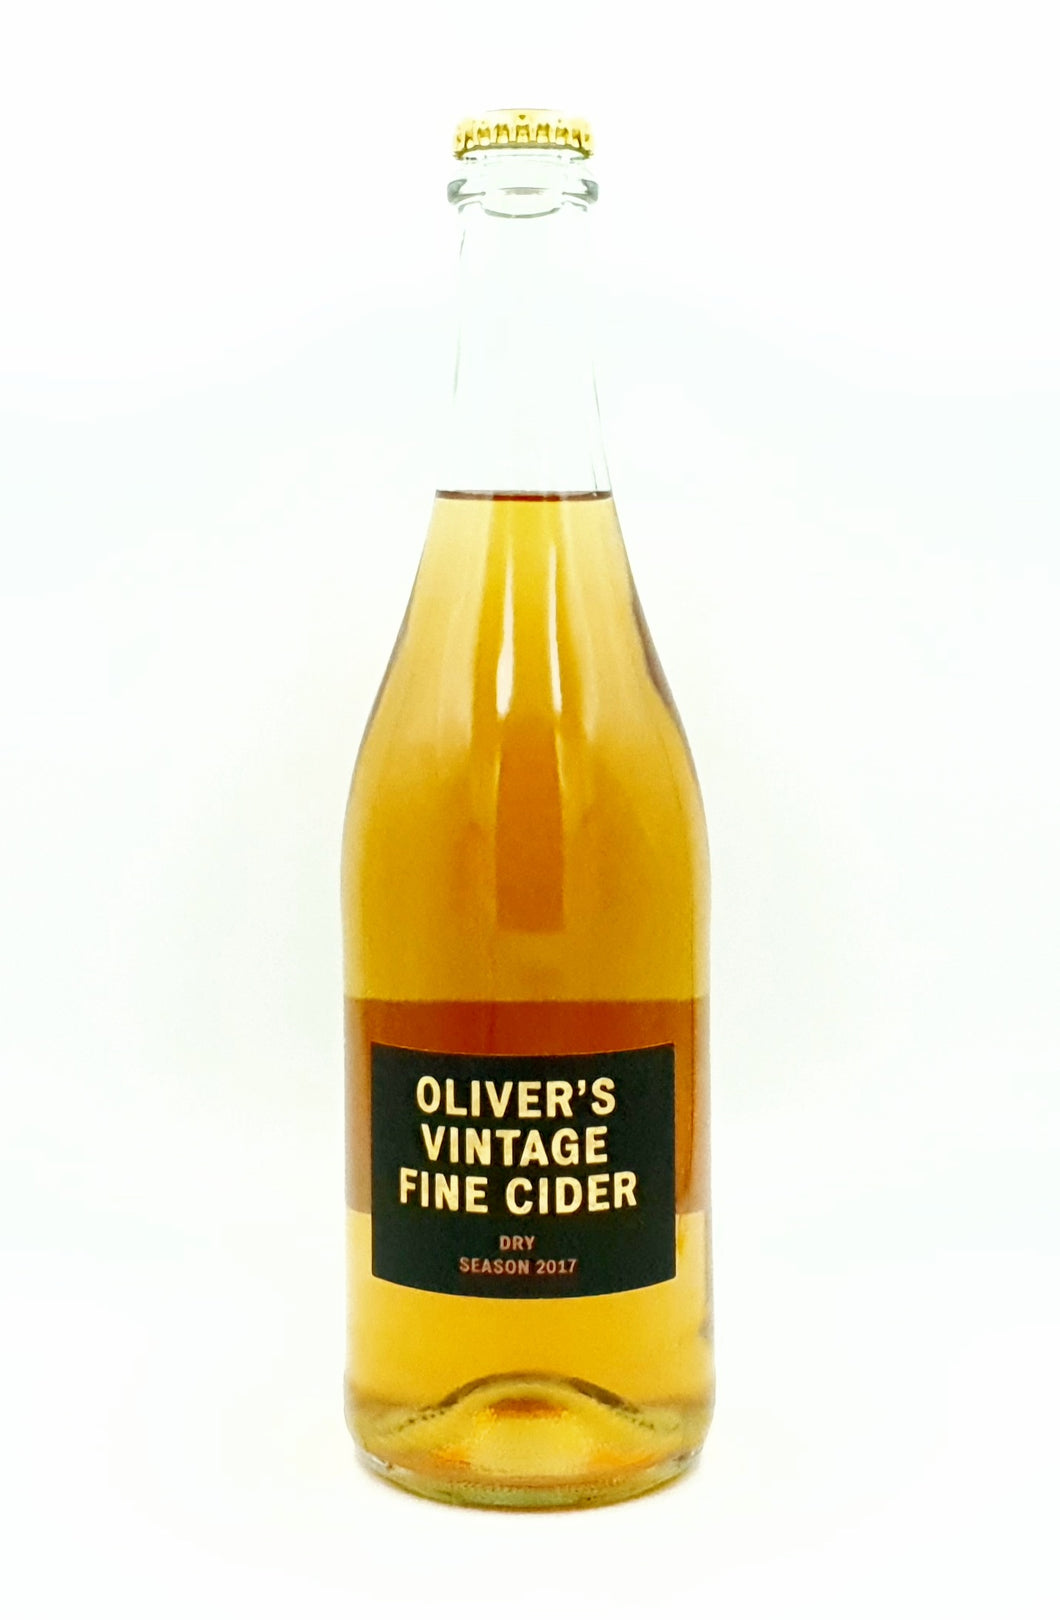 Single Vintage Season 2017 Cider - Oliver's - Dry Cider, 8.4%, 750ml Bottle